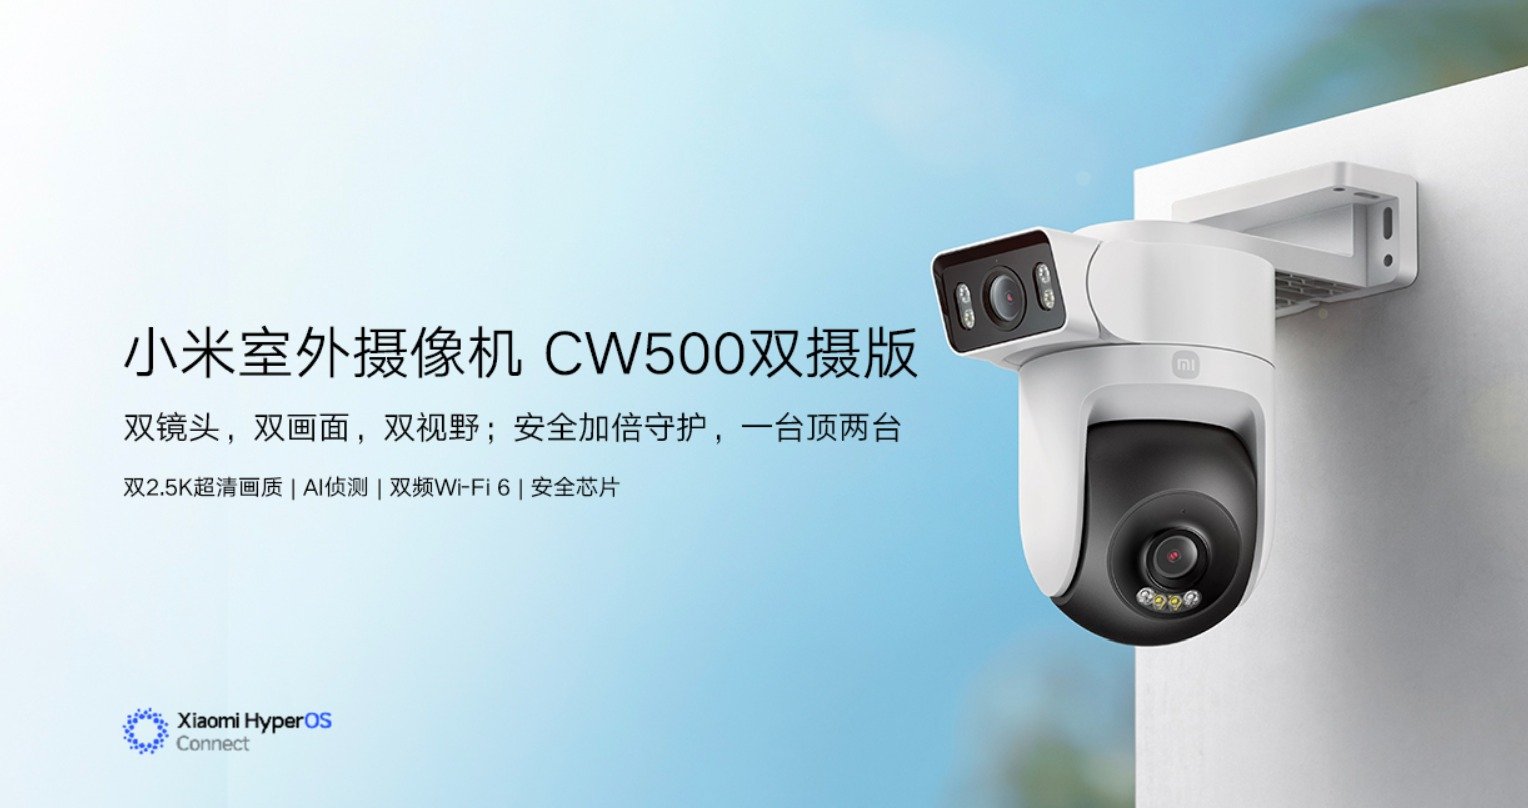 Xiaomi 야외용 카메라 CW500 듀얼 카메라 에디션